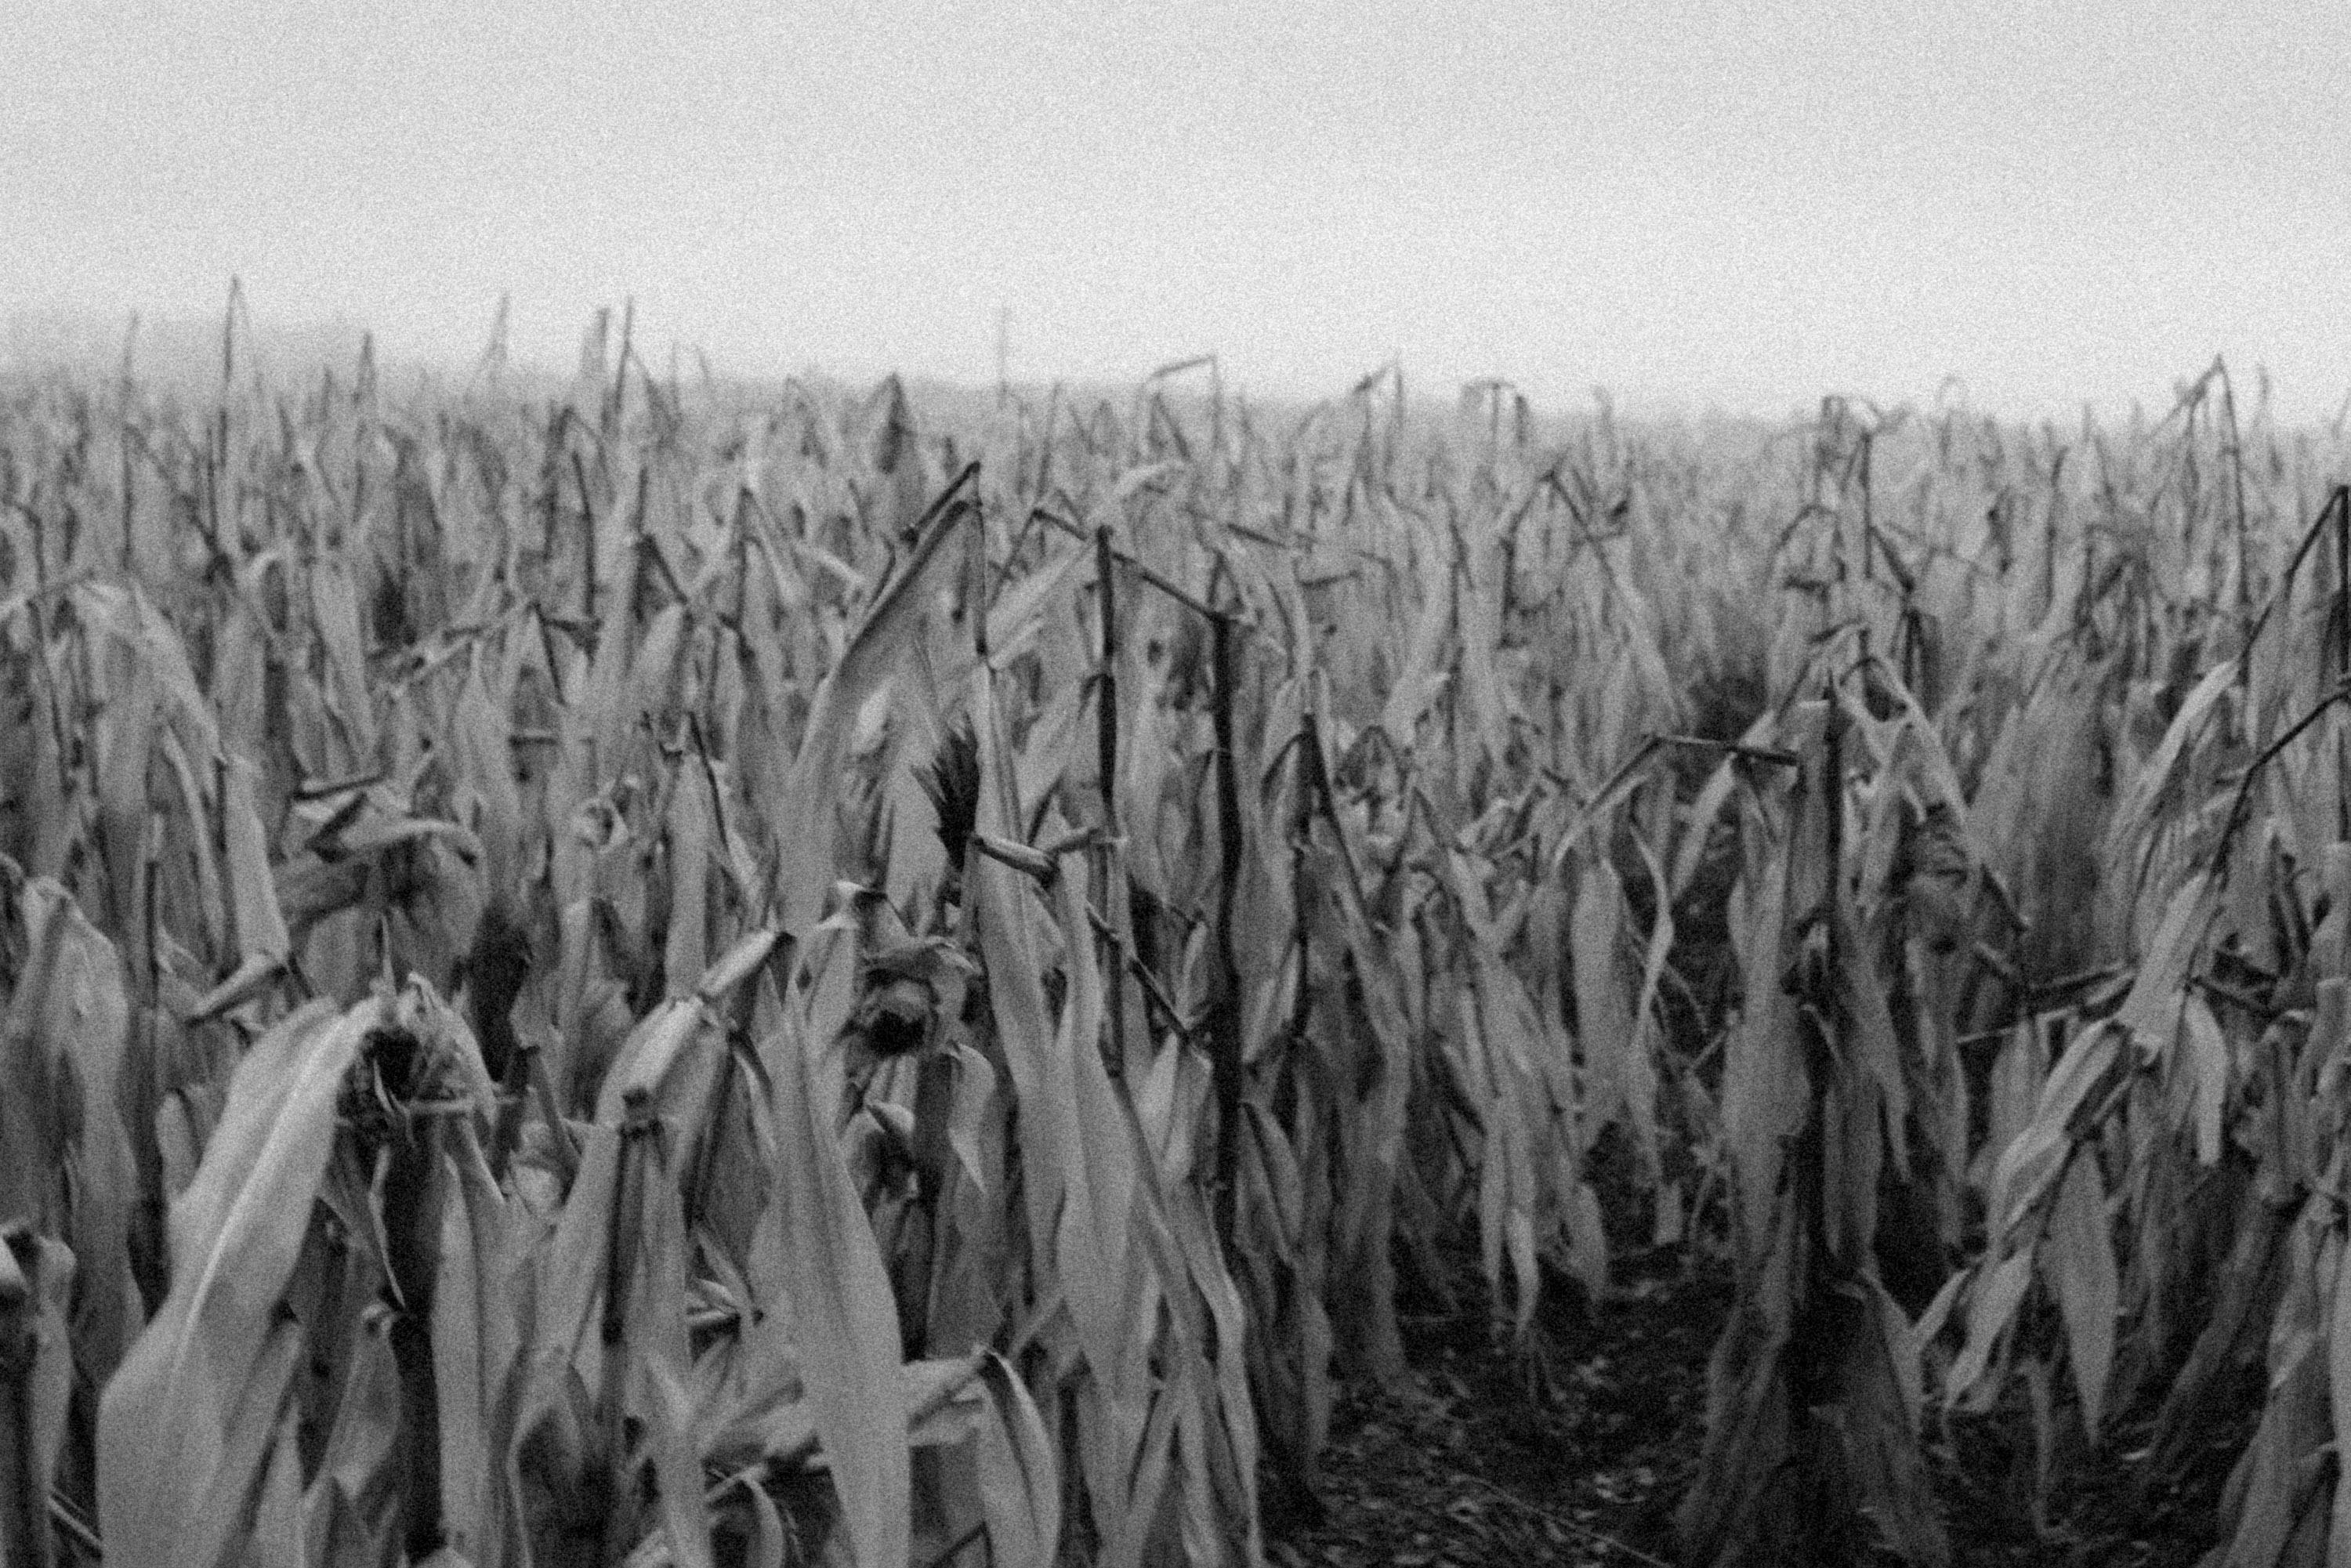 corn field black and white